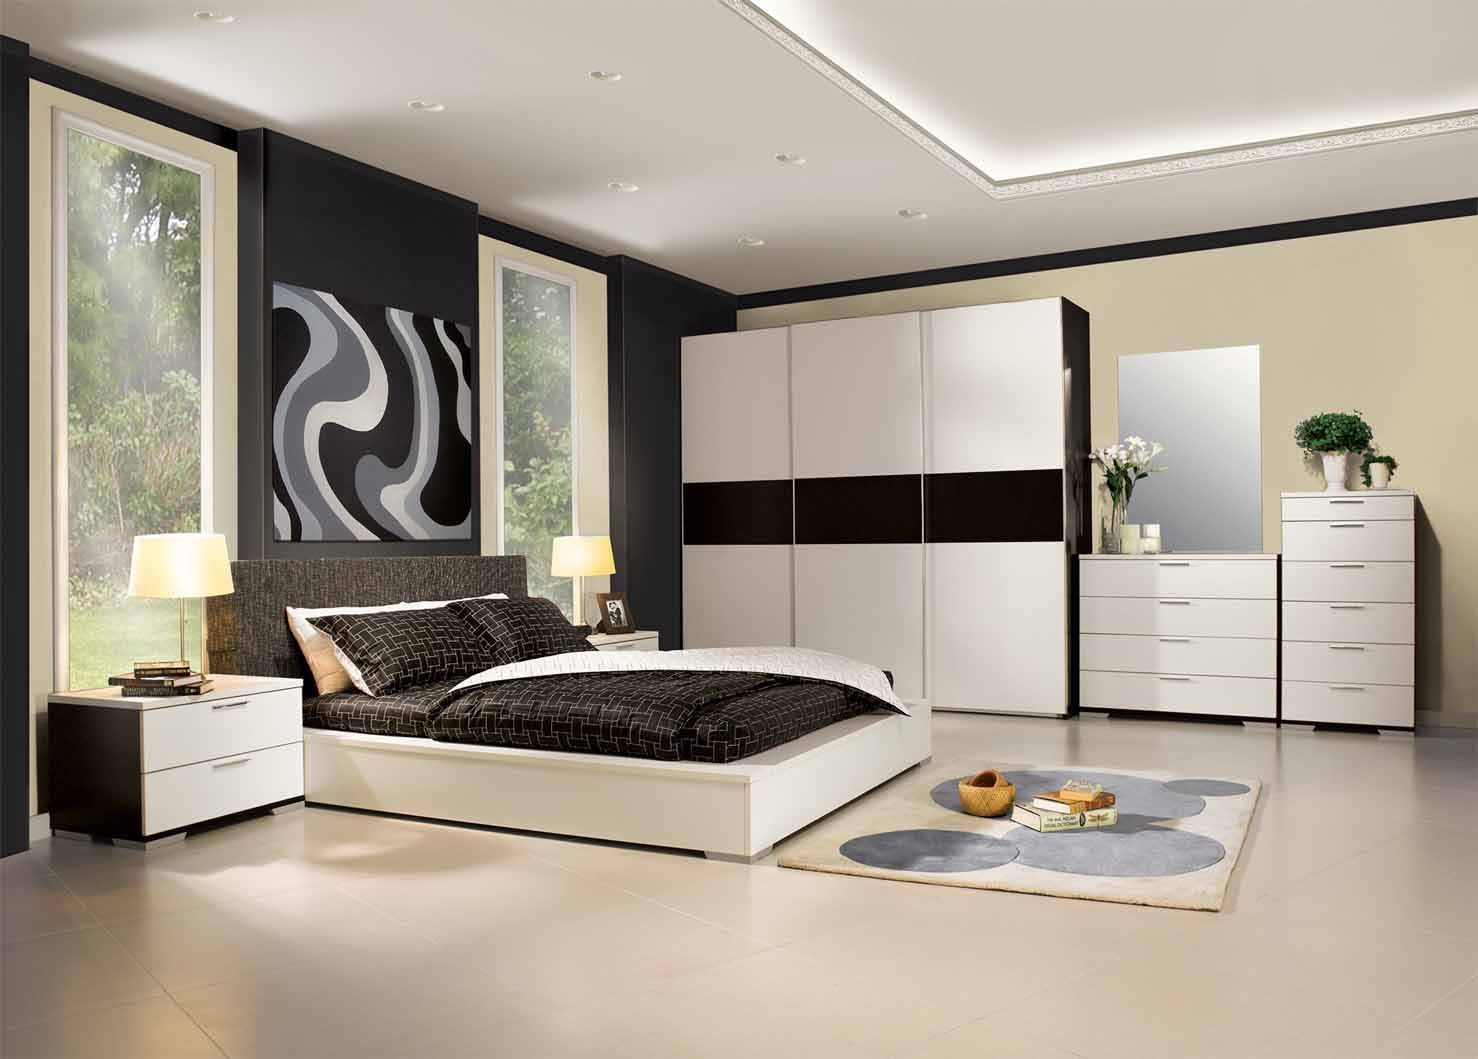 Muebles modernos para habitaciones